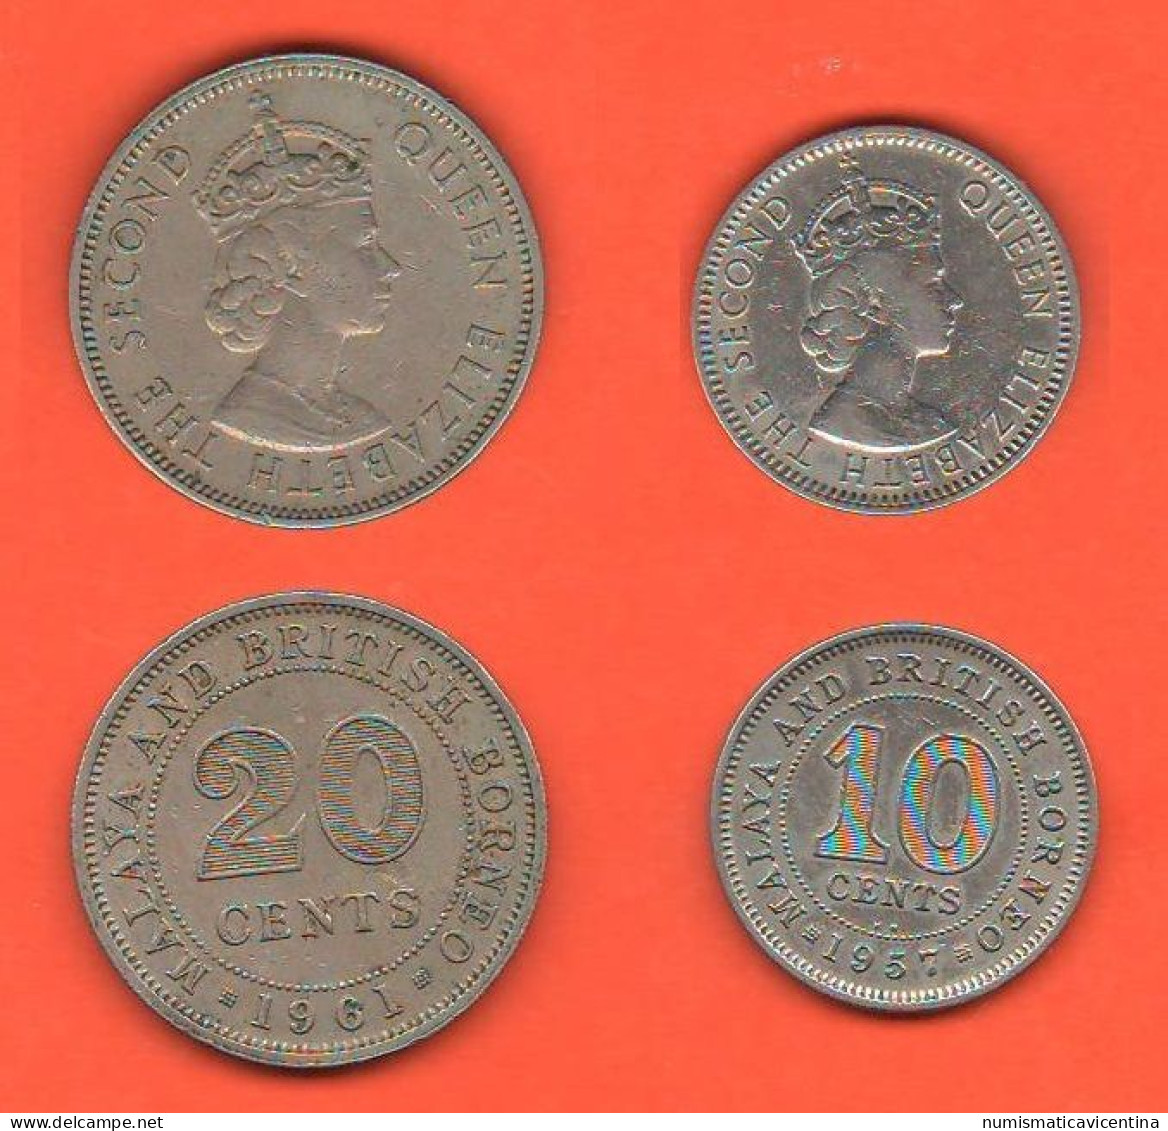 British Borneo 10 + 20 Cents 1957 E 1961 Borneo Britannico 10 + 20 Centesimi Nickel Coin Malesia Malaysia   C 7 - Colonie